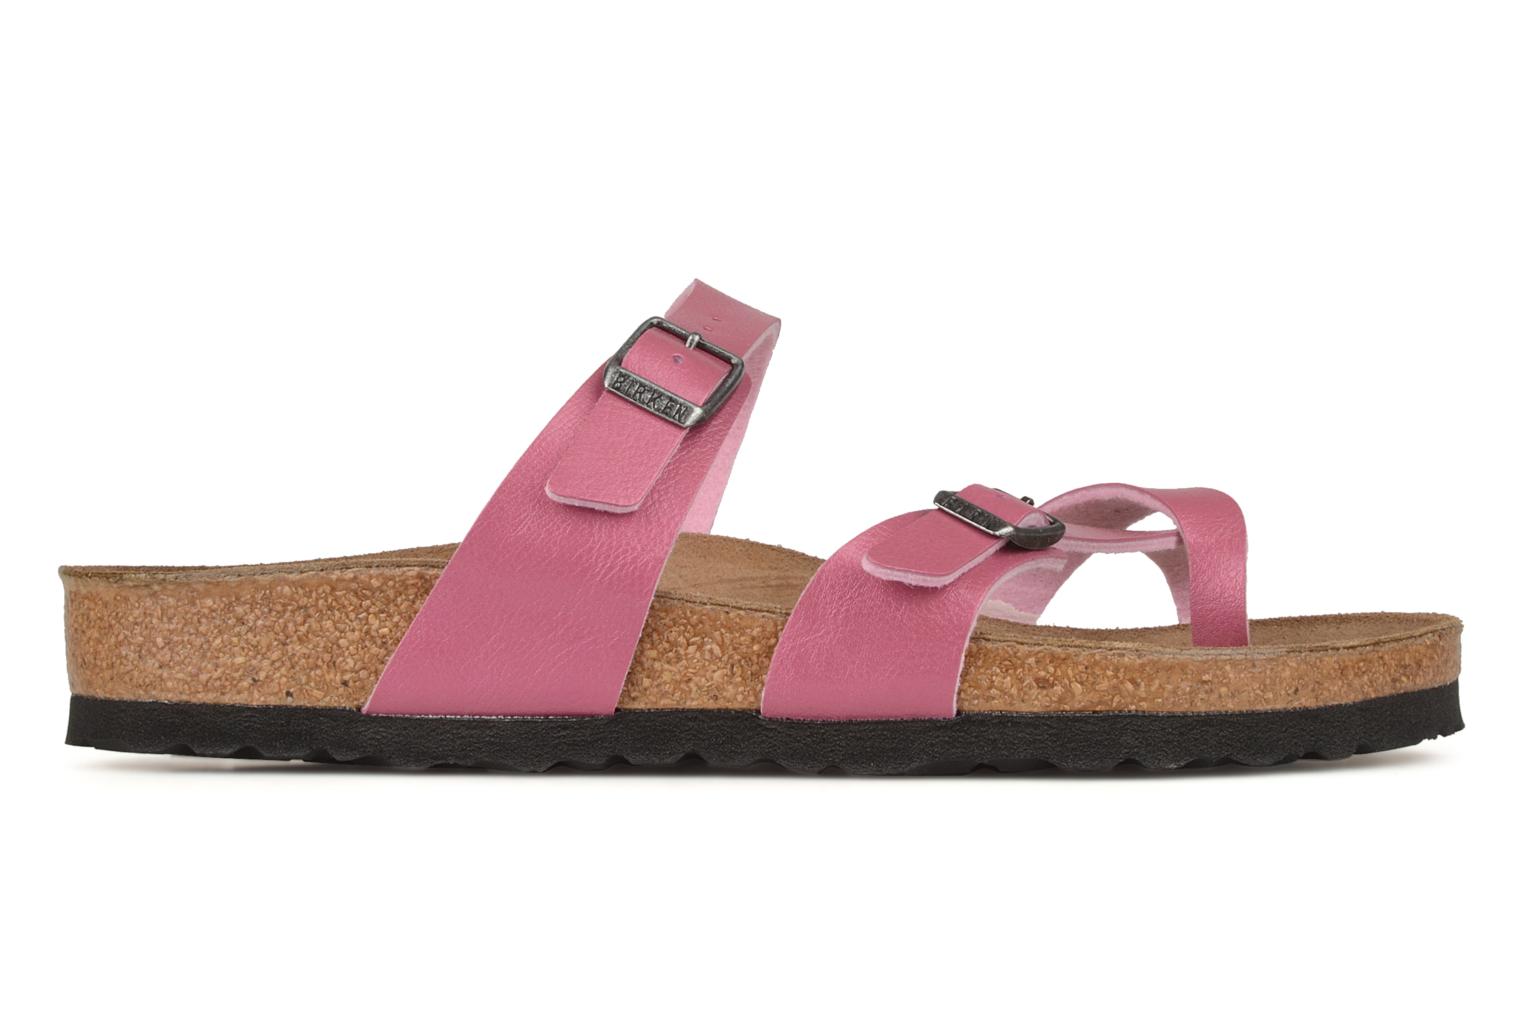 Birkenstock Mayari Sandals in Pink at Sarenza.co.uk (61324)